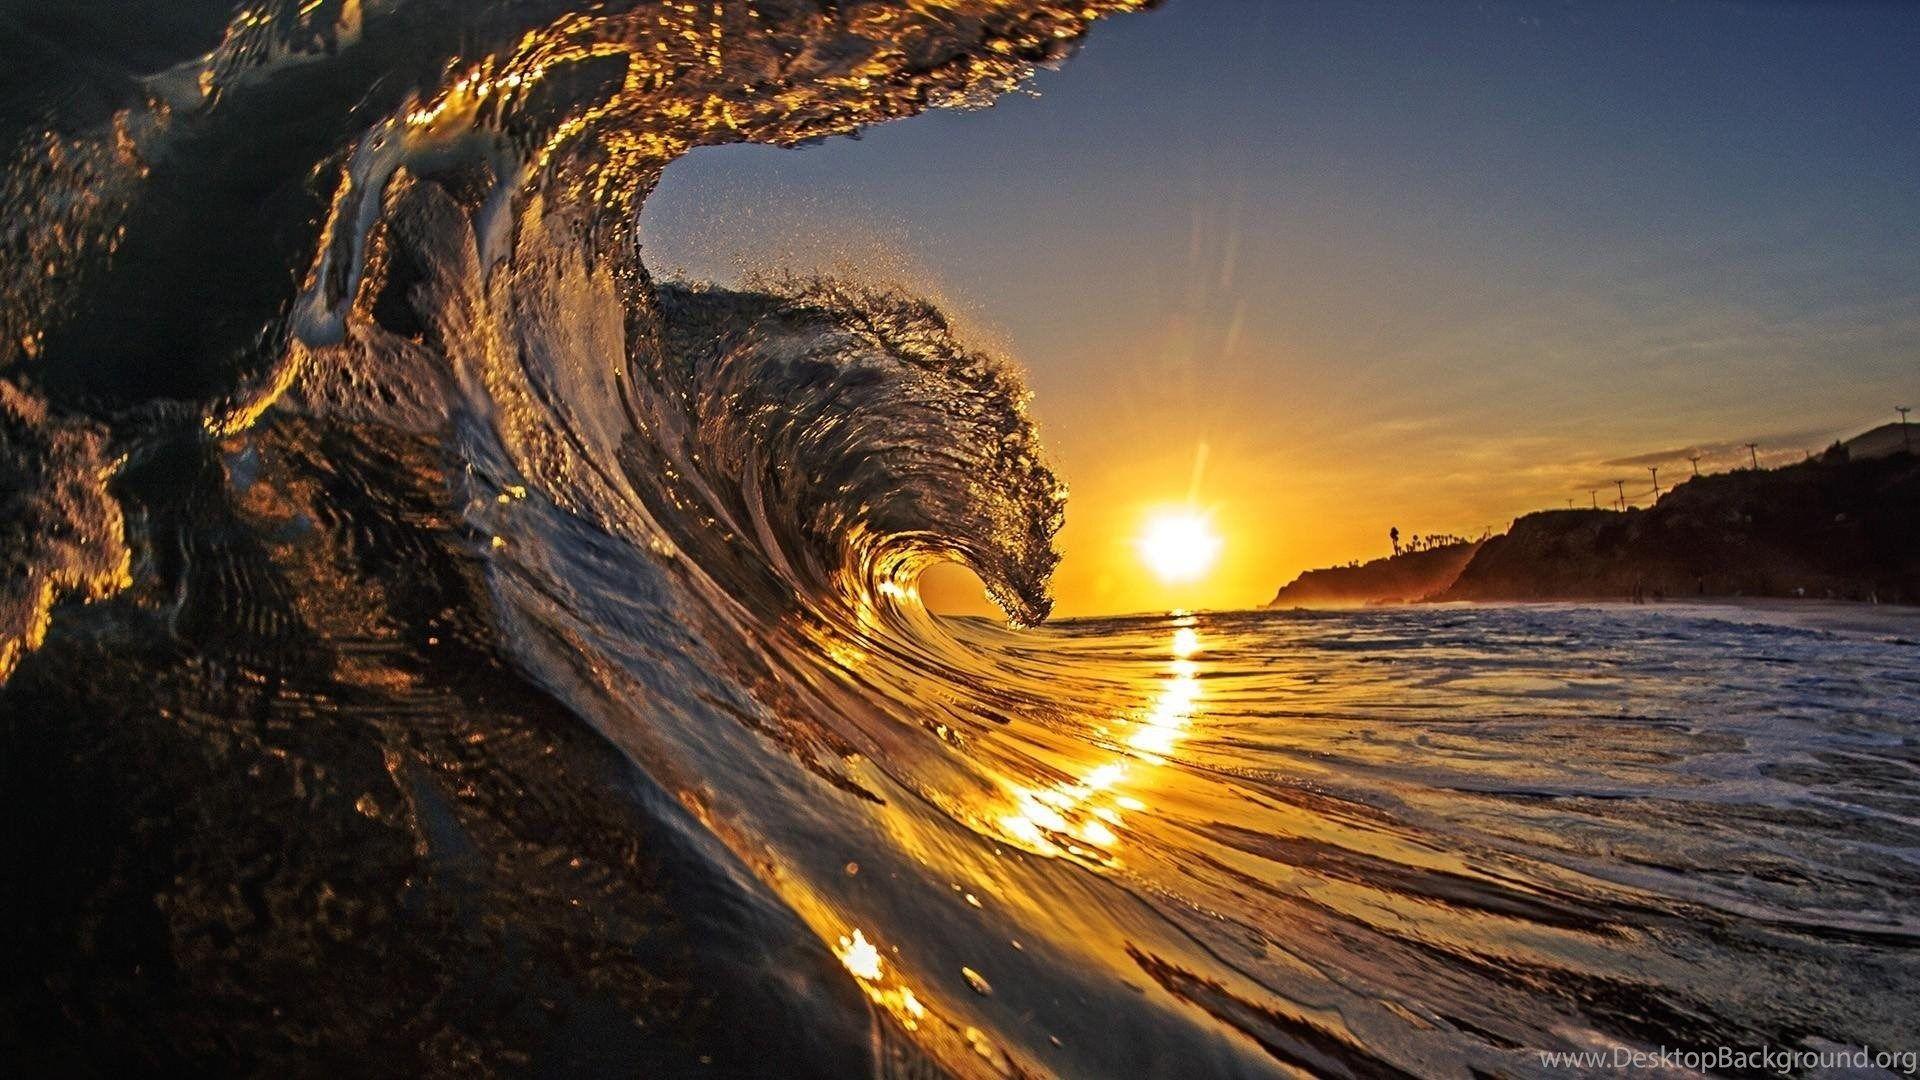 Sunset Surf Wallpaper, hawaii HD Wallpaper, beach HD Wallpaper, wave